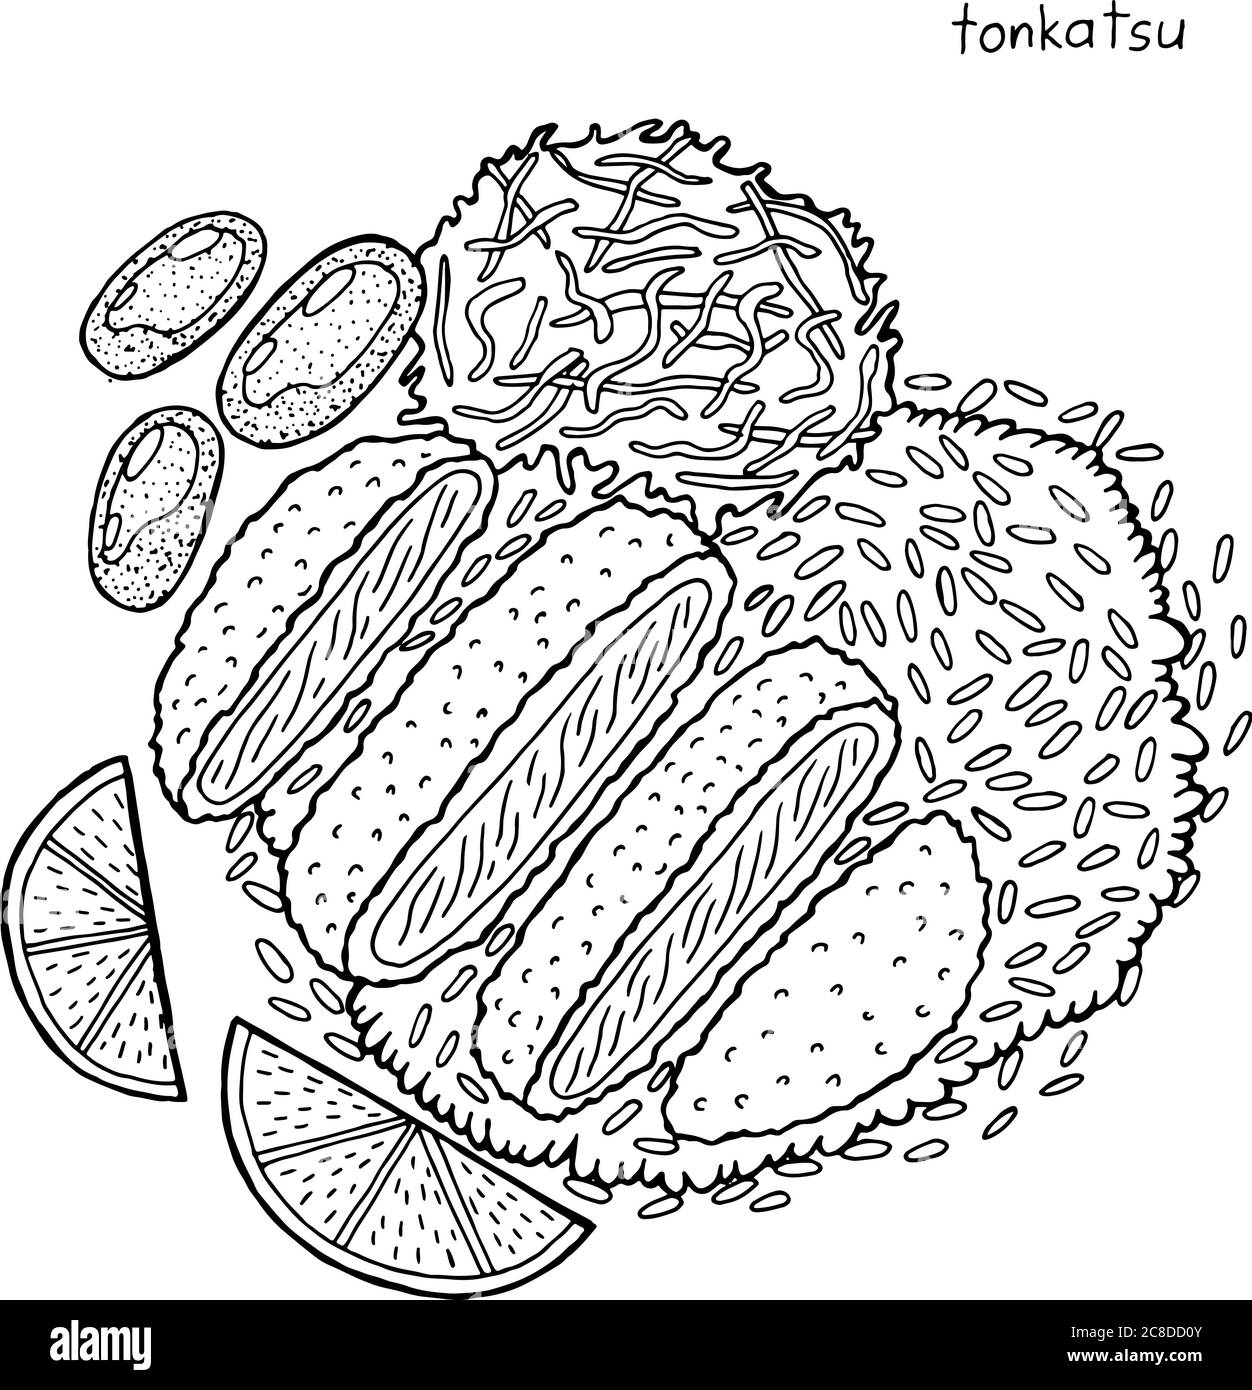 Tonkatsu - illustrazione giapponese dell'inchiostro alimentare. Grafica in bianco e nero. Pagina da colorare per adulti. Illustrazione vettoriale. Illustrazione Vettoriale